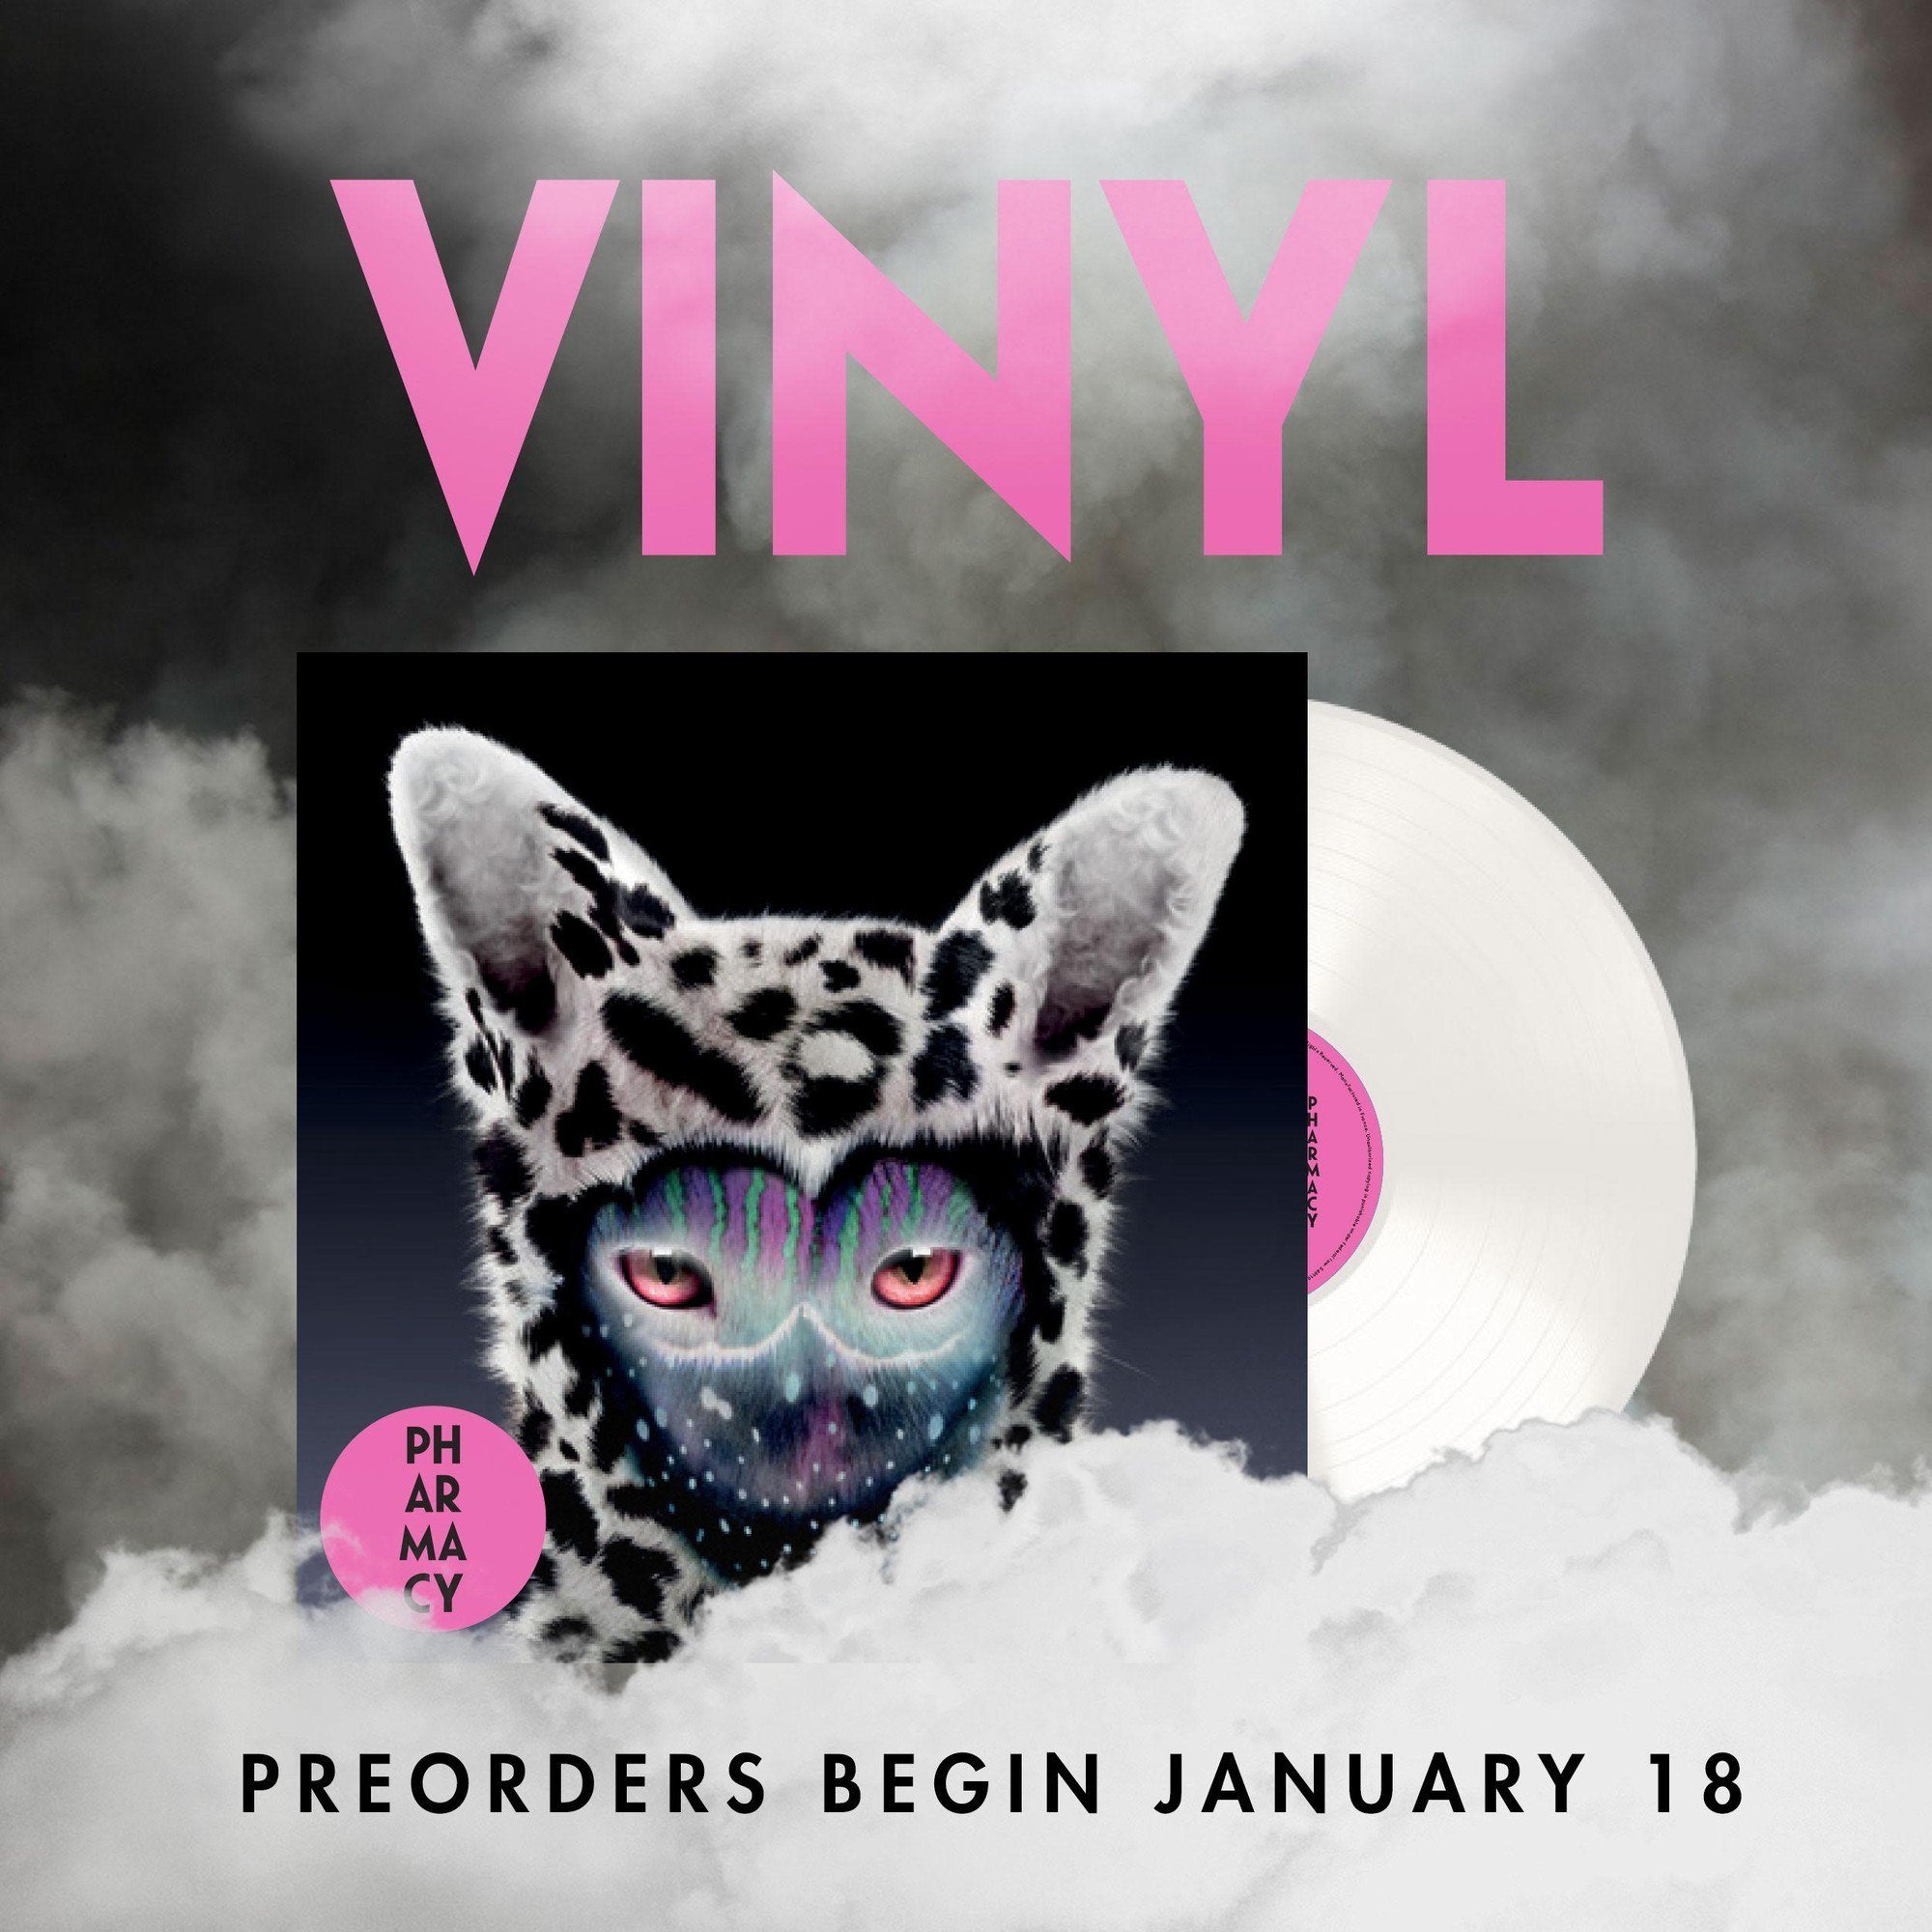 Galantis on "Keep edition PHARMACY white 💿 vinyl has arrived. https://t.co/JuVrt6ZSmc / Twitter